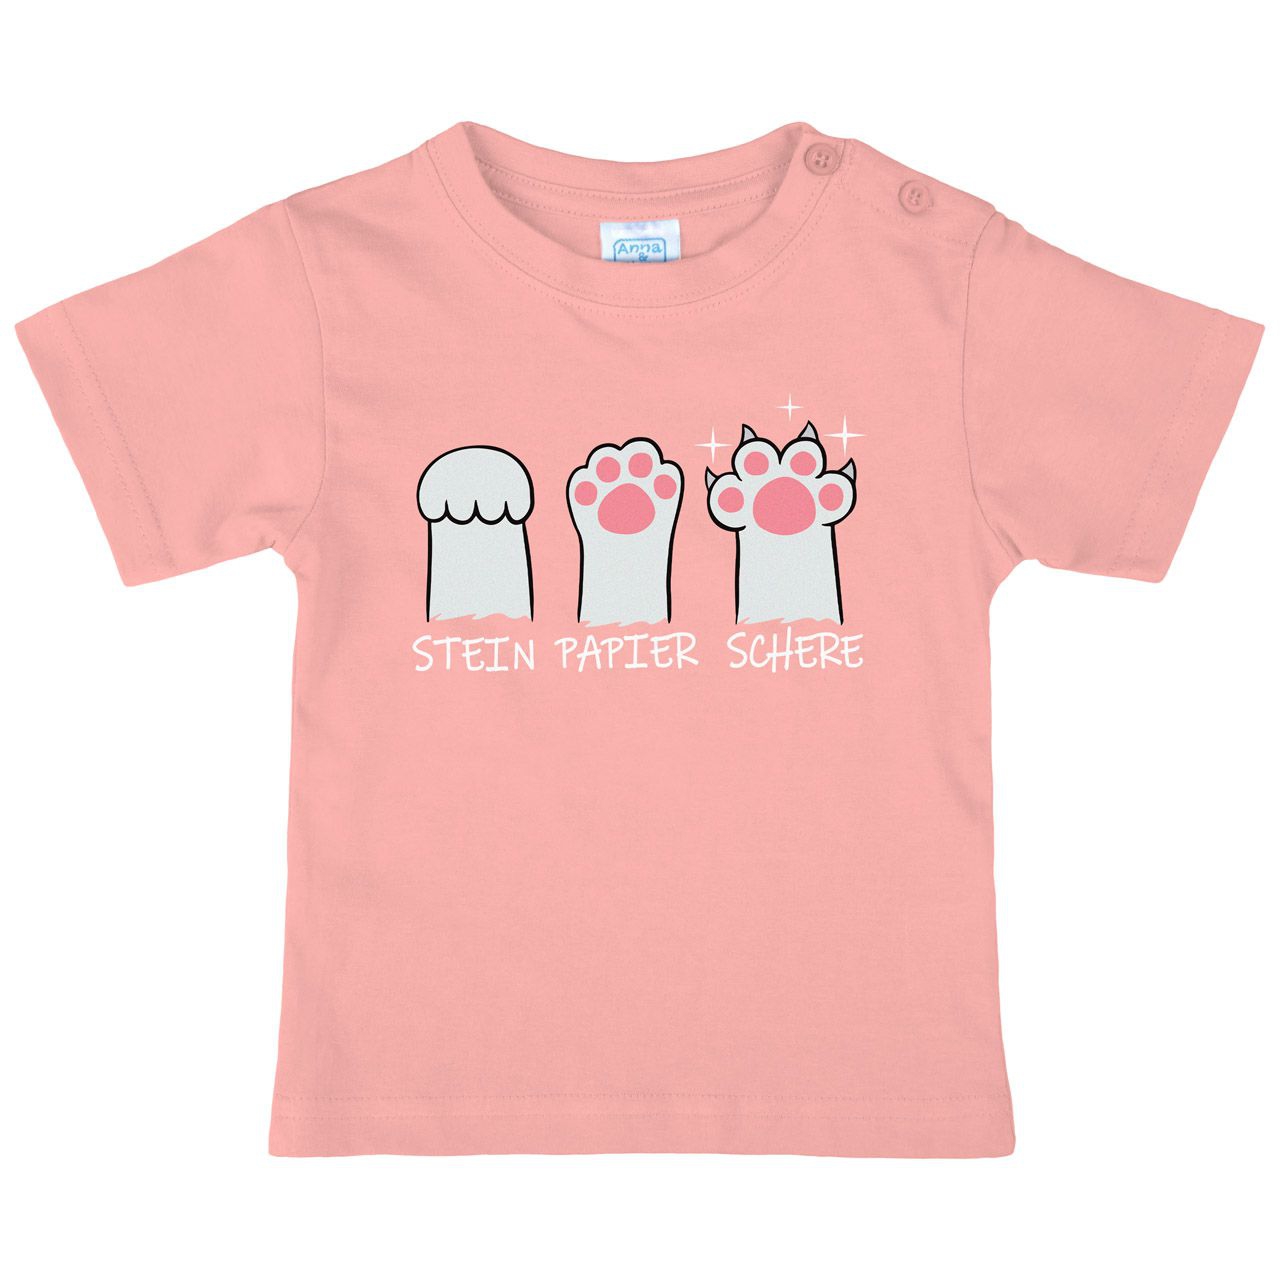 Stein Papier Schere Katzenpfote Kinder T-Shirt rosa 122 / 128